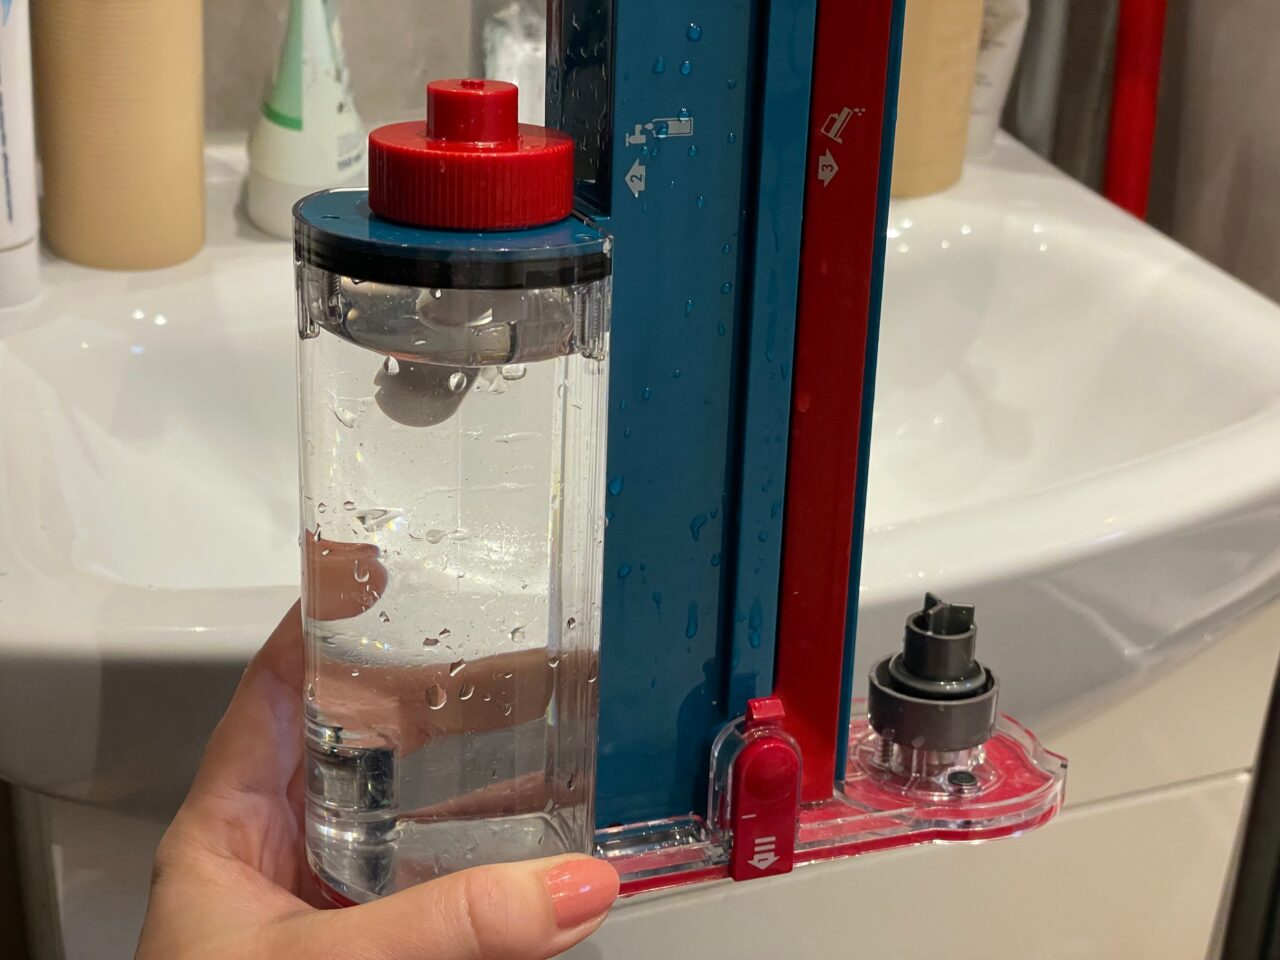 Ręka trzymająca przezroczysty pojemnik z wodą obok niebieskiego i czerwonego poziomica na białej umywalce.